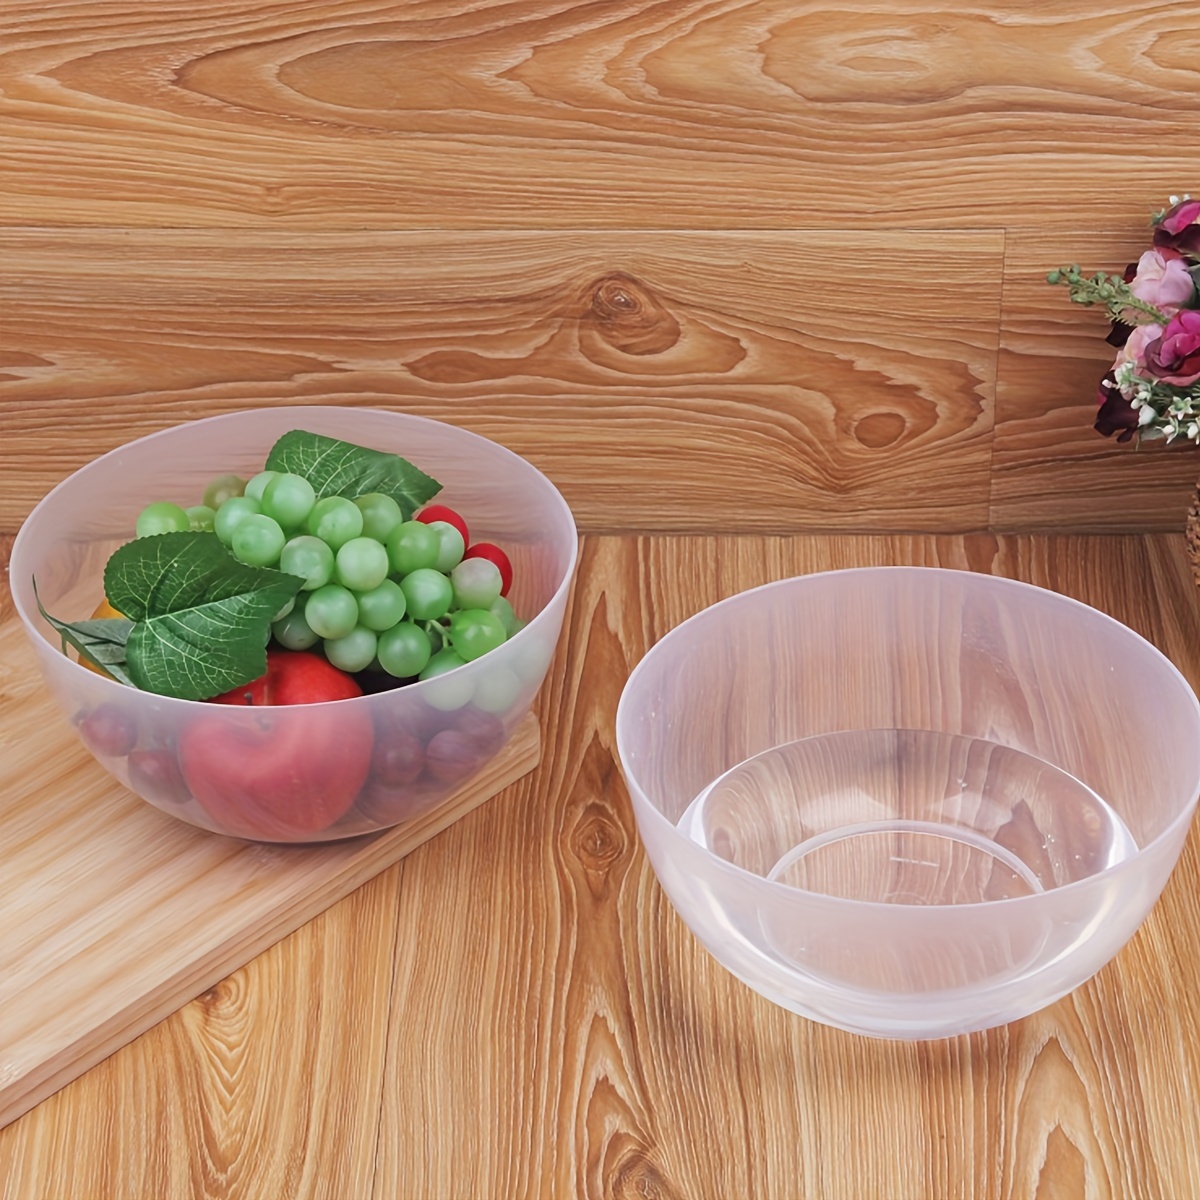 

2-piece Versatile Plastic Bowls - Microwave Safe, Round Transparent Salad, Soup, Fruit & Dessert Serving Dishes